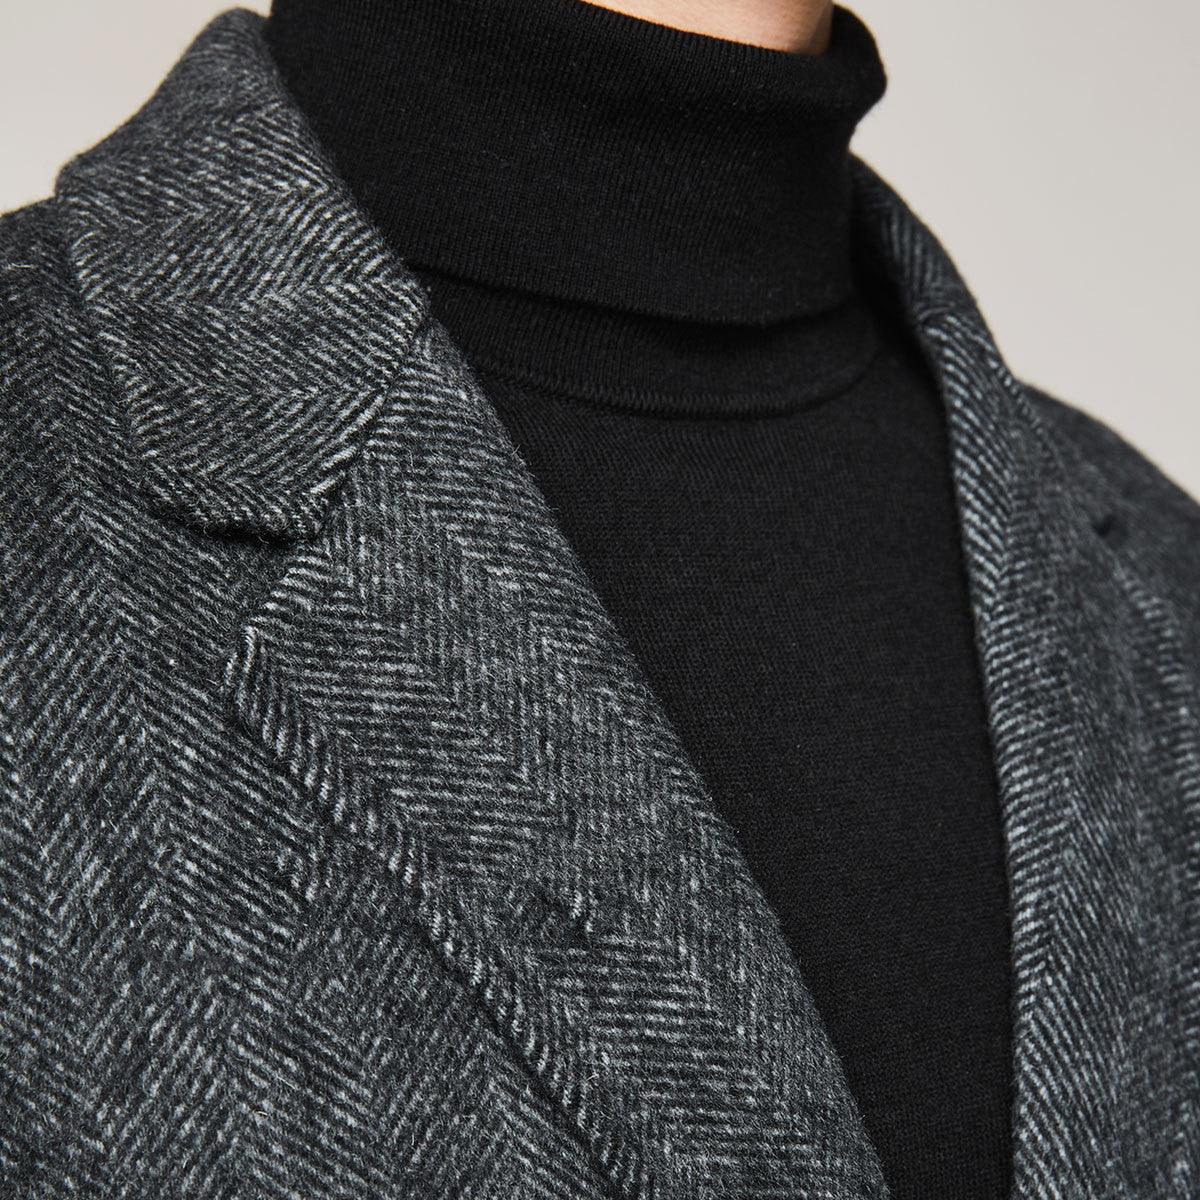 Winter Men's Casual Long Woolen Trench Overcoat Winter clothes for men